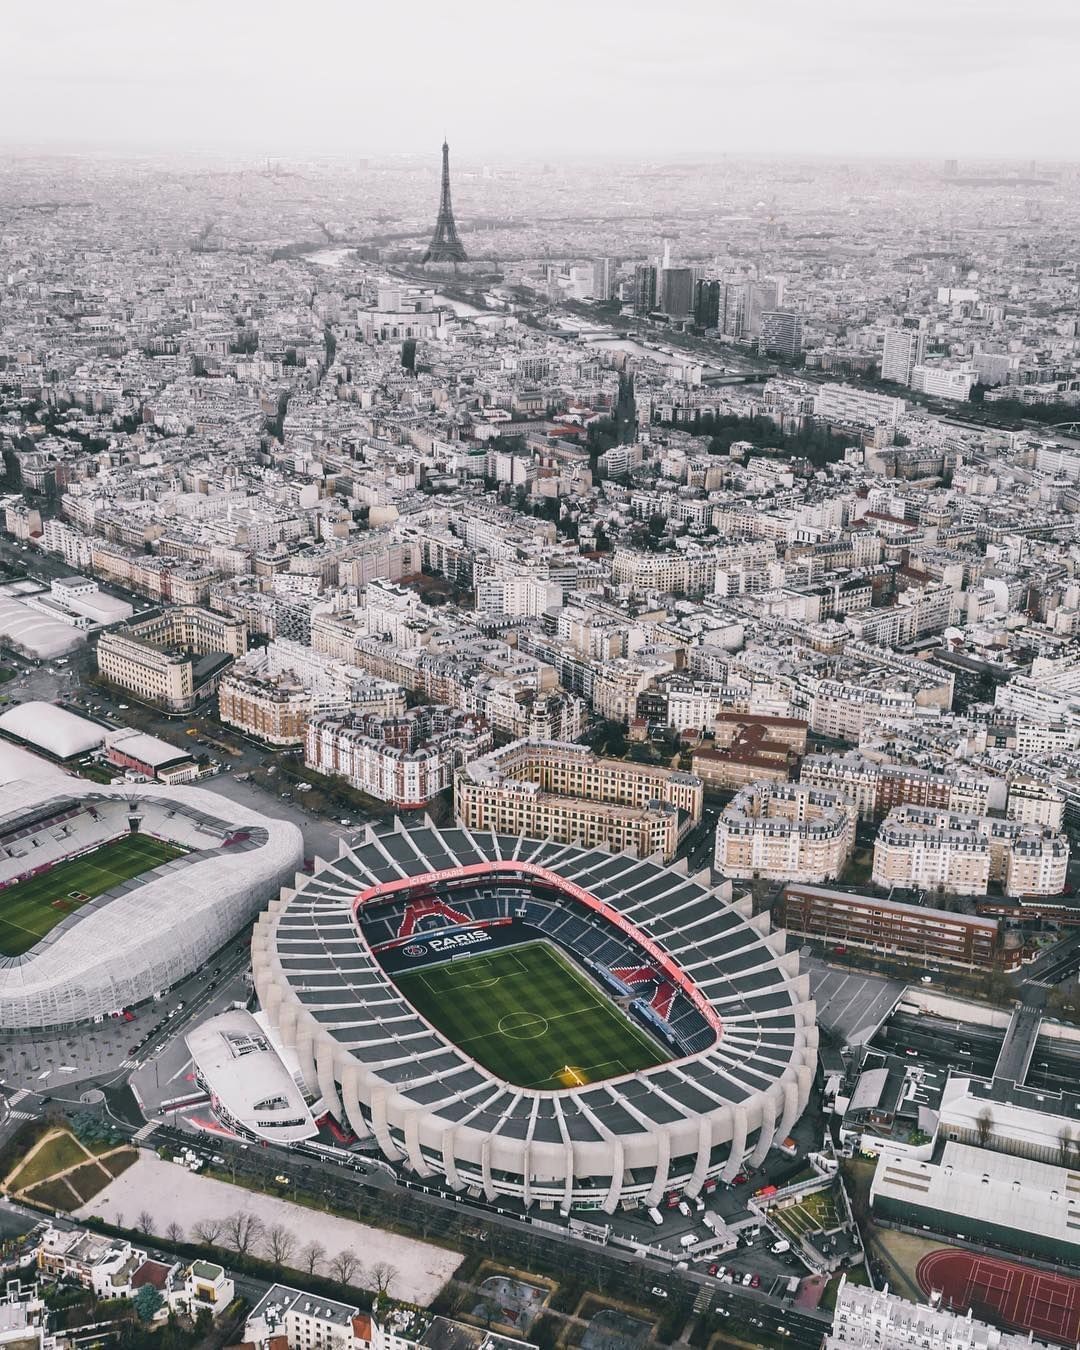 Fubiz on Instagram: “Soccer Field from Above